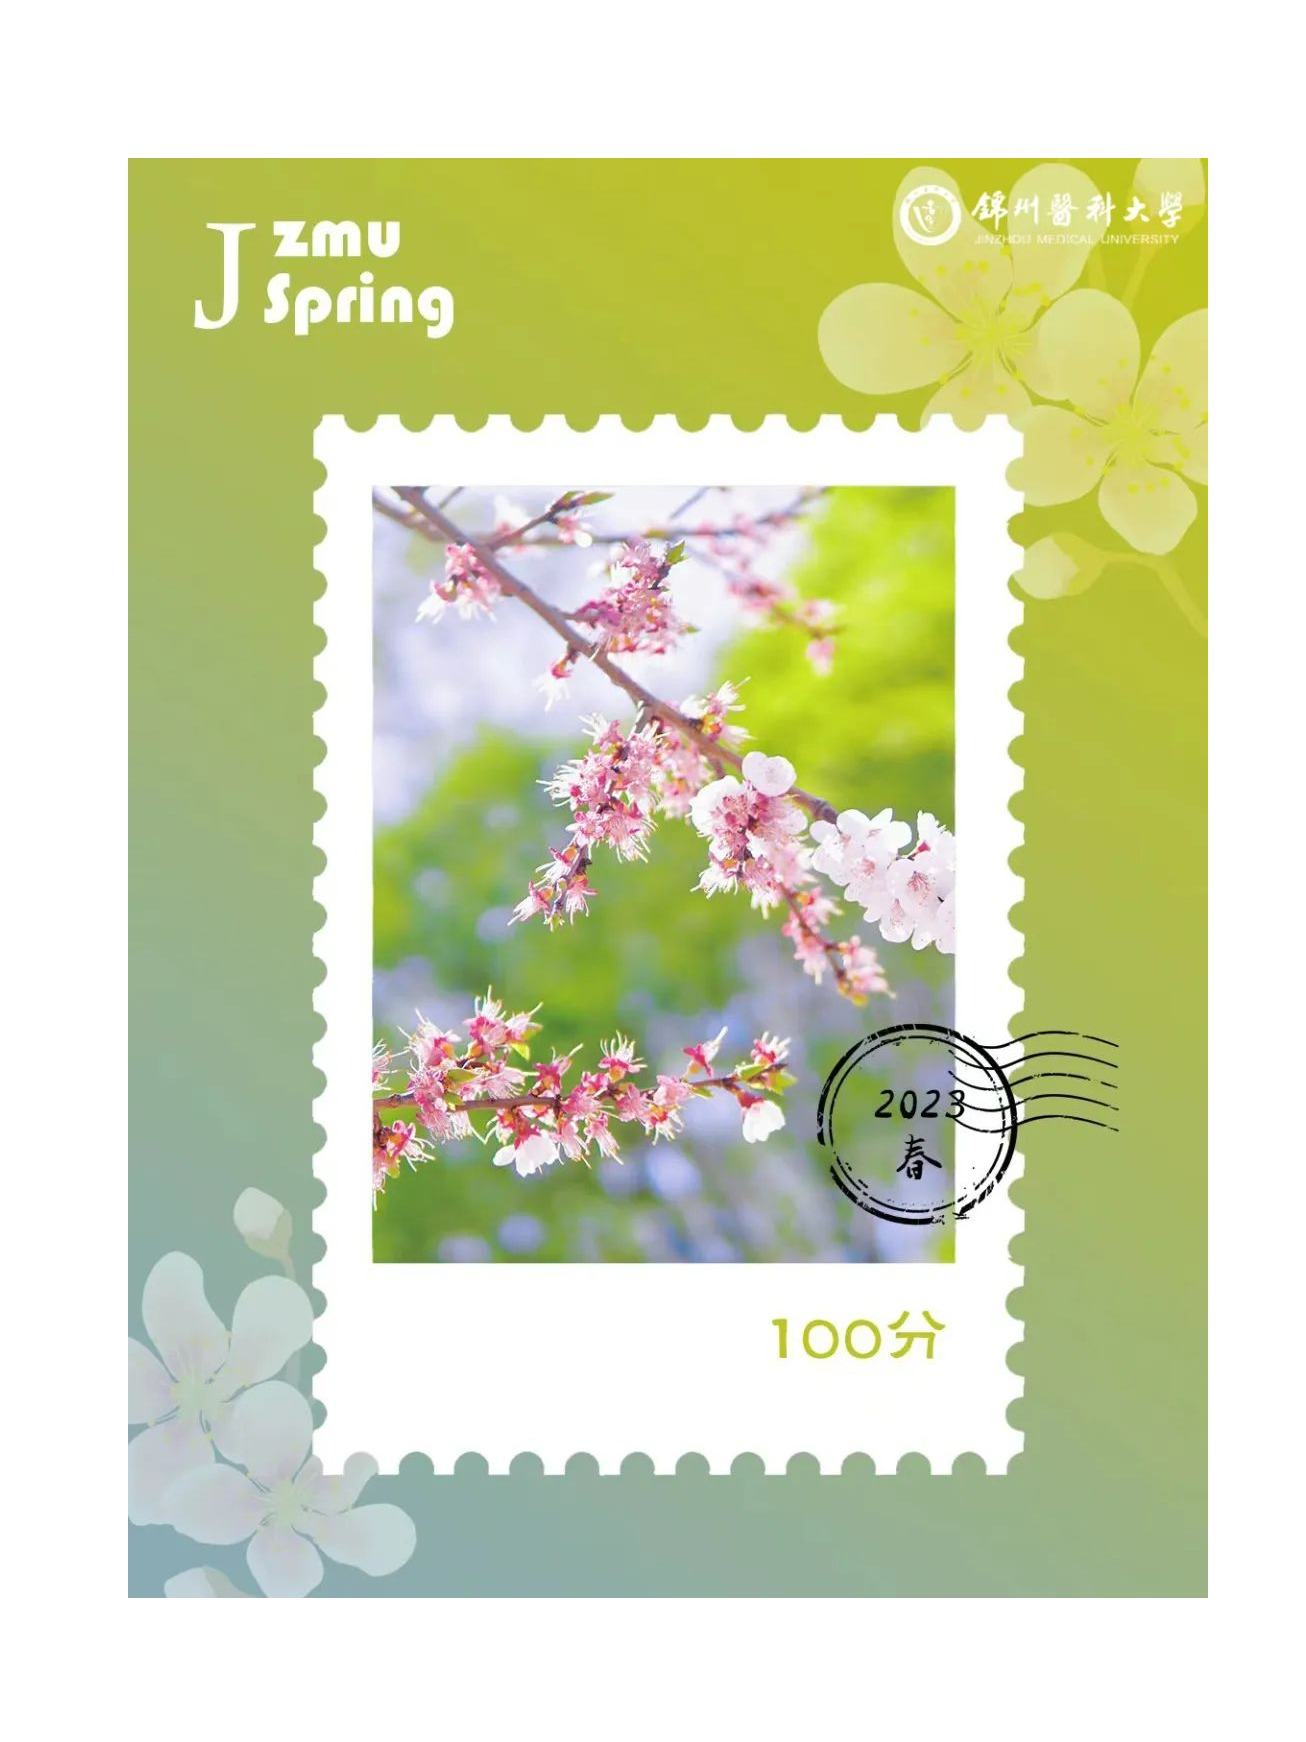 送你一套锦医邮票 写给盛世之春的自己